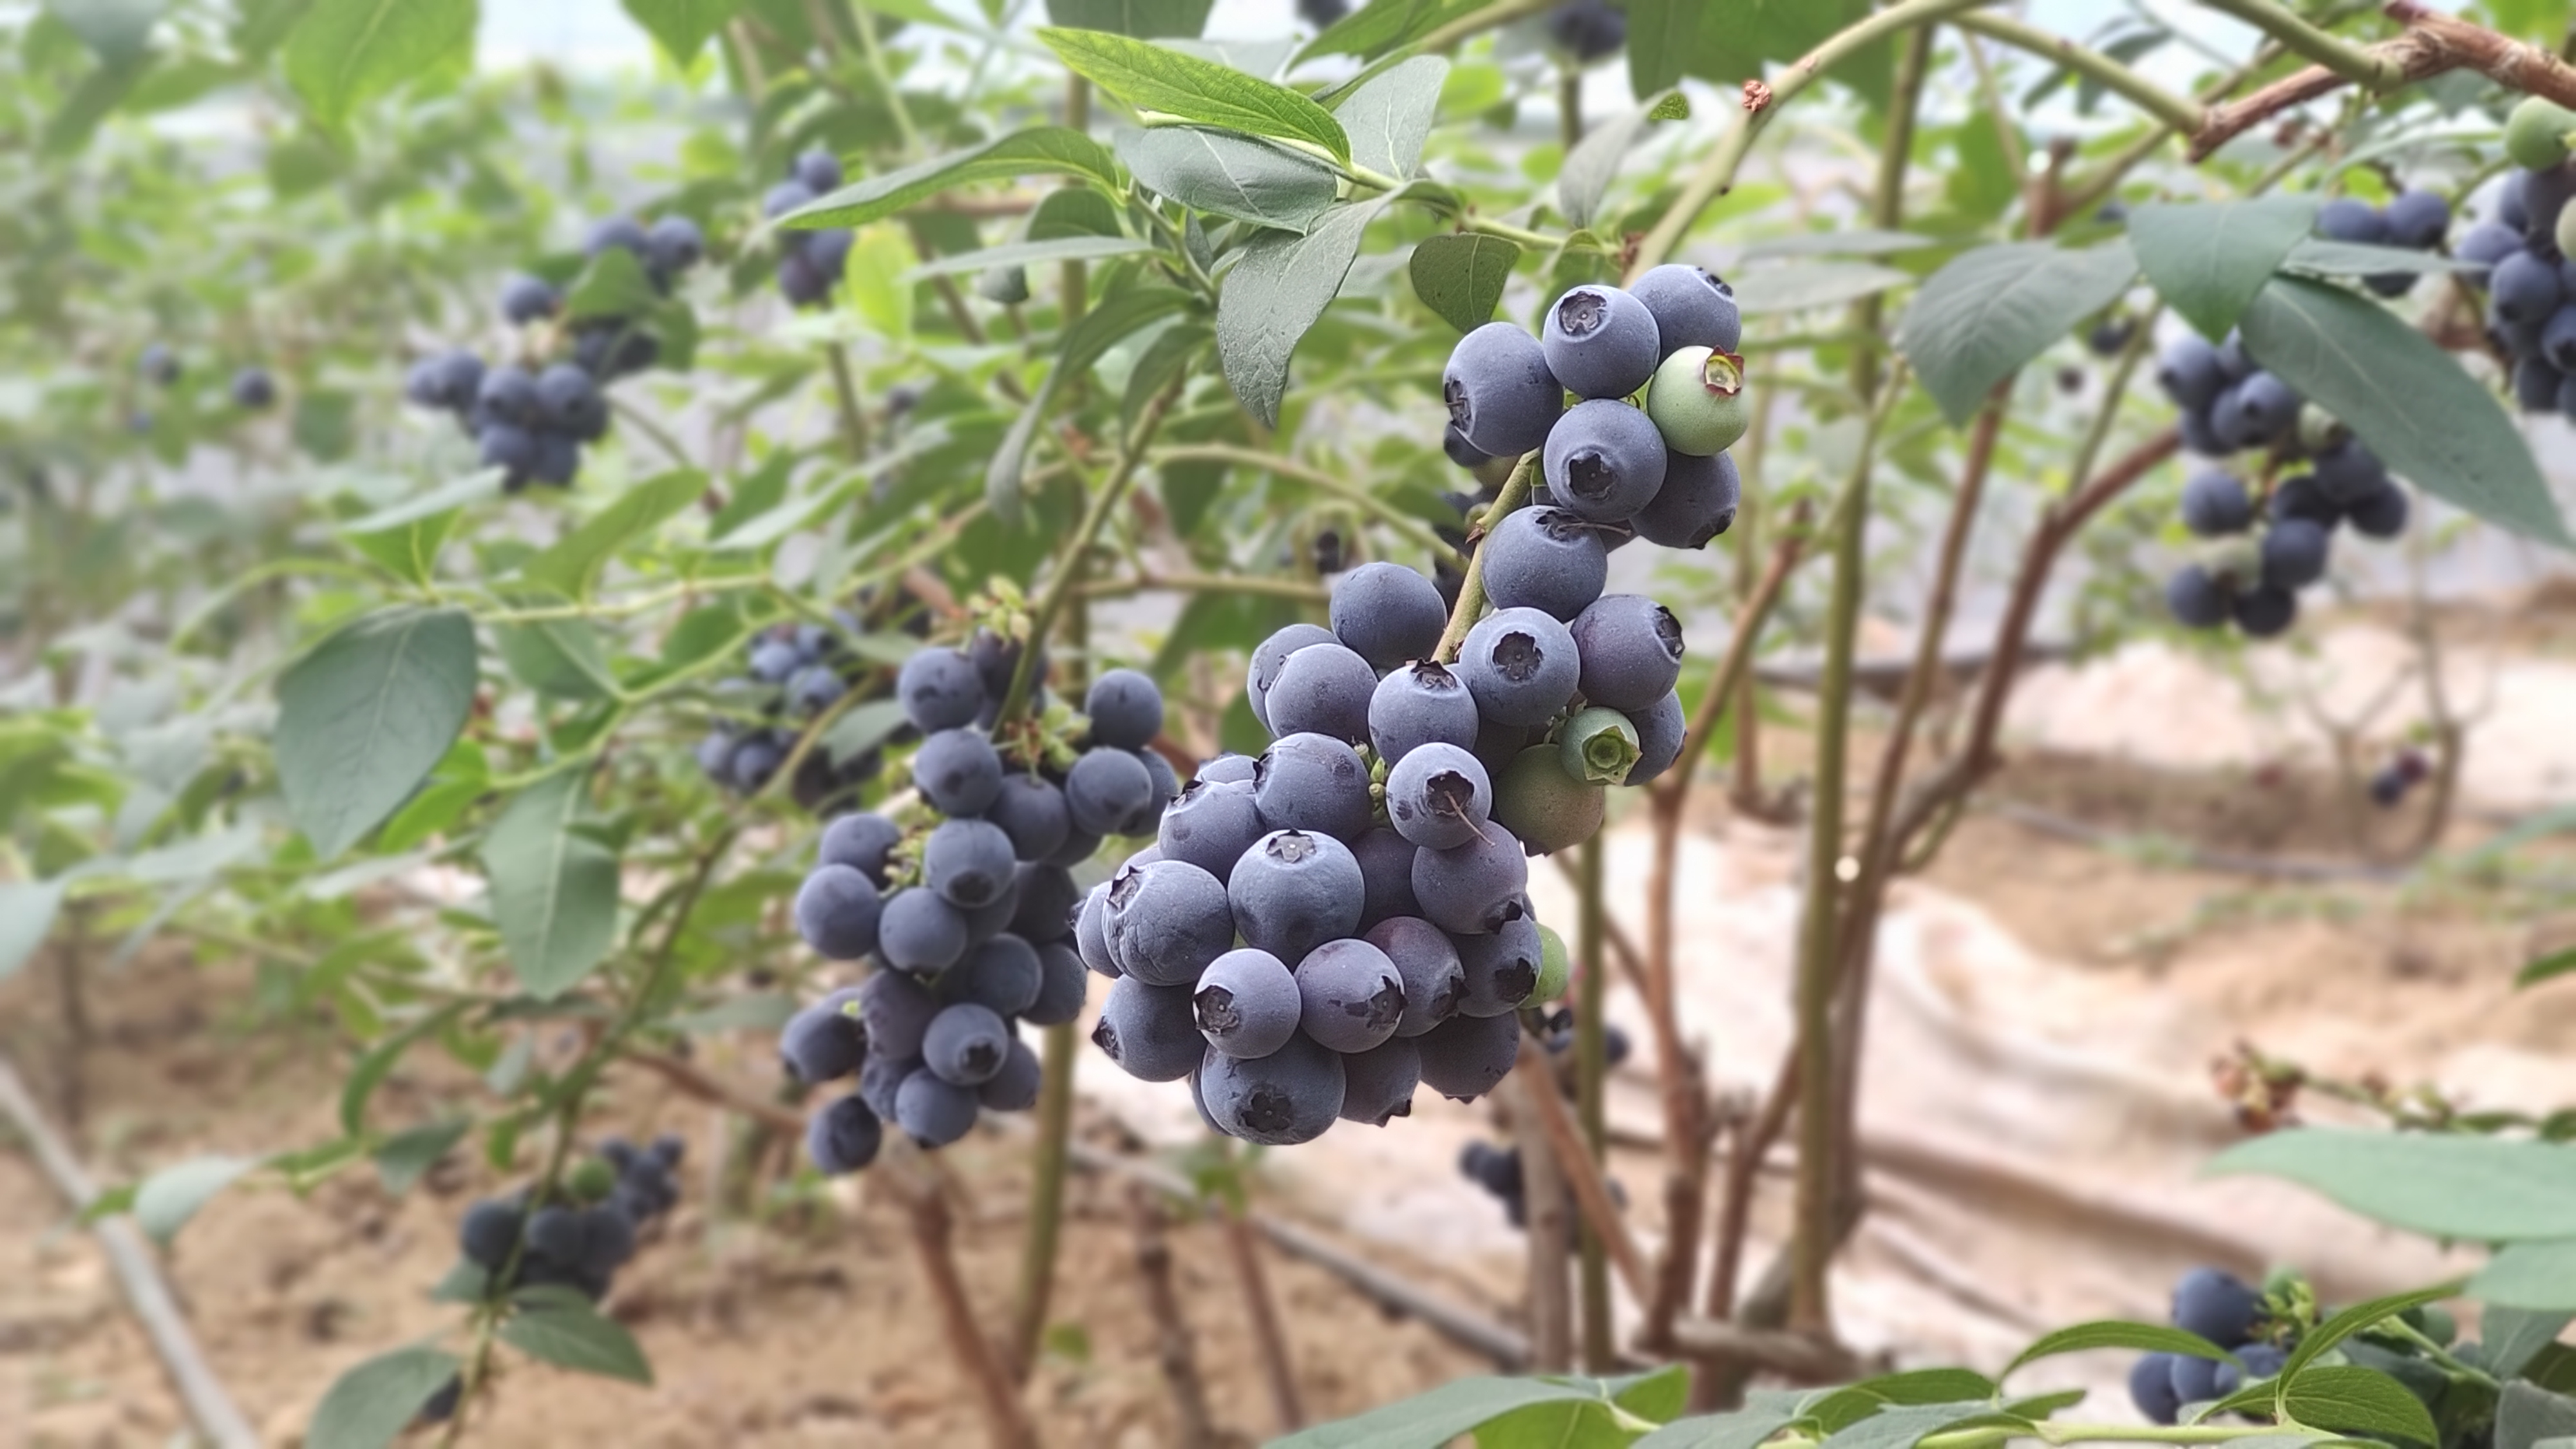 西海岸蓝莓采摘节启动 70家蓝莓采摘园区等你来 